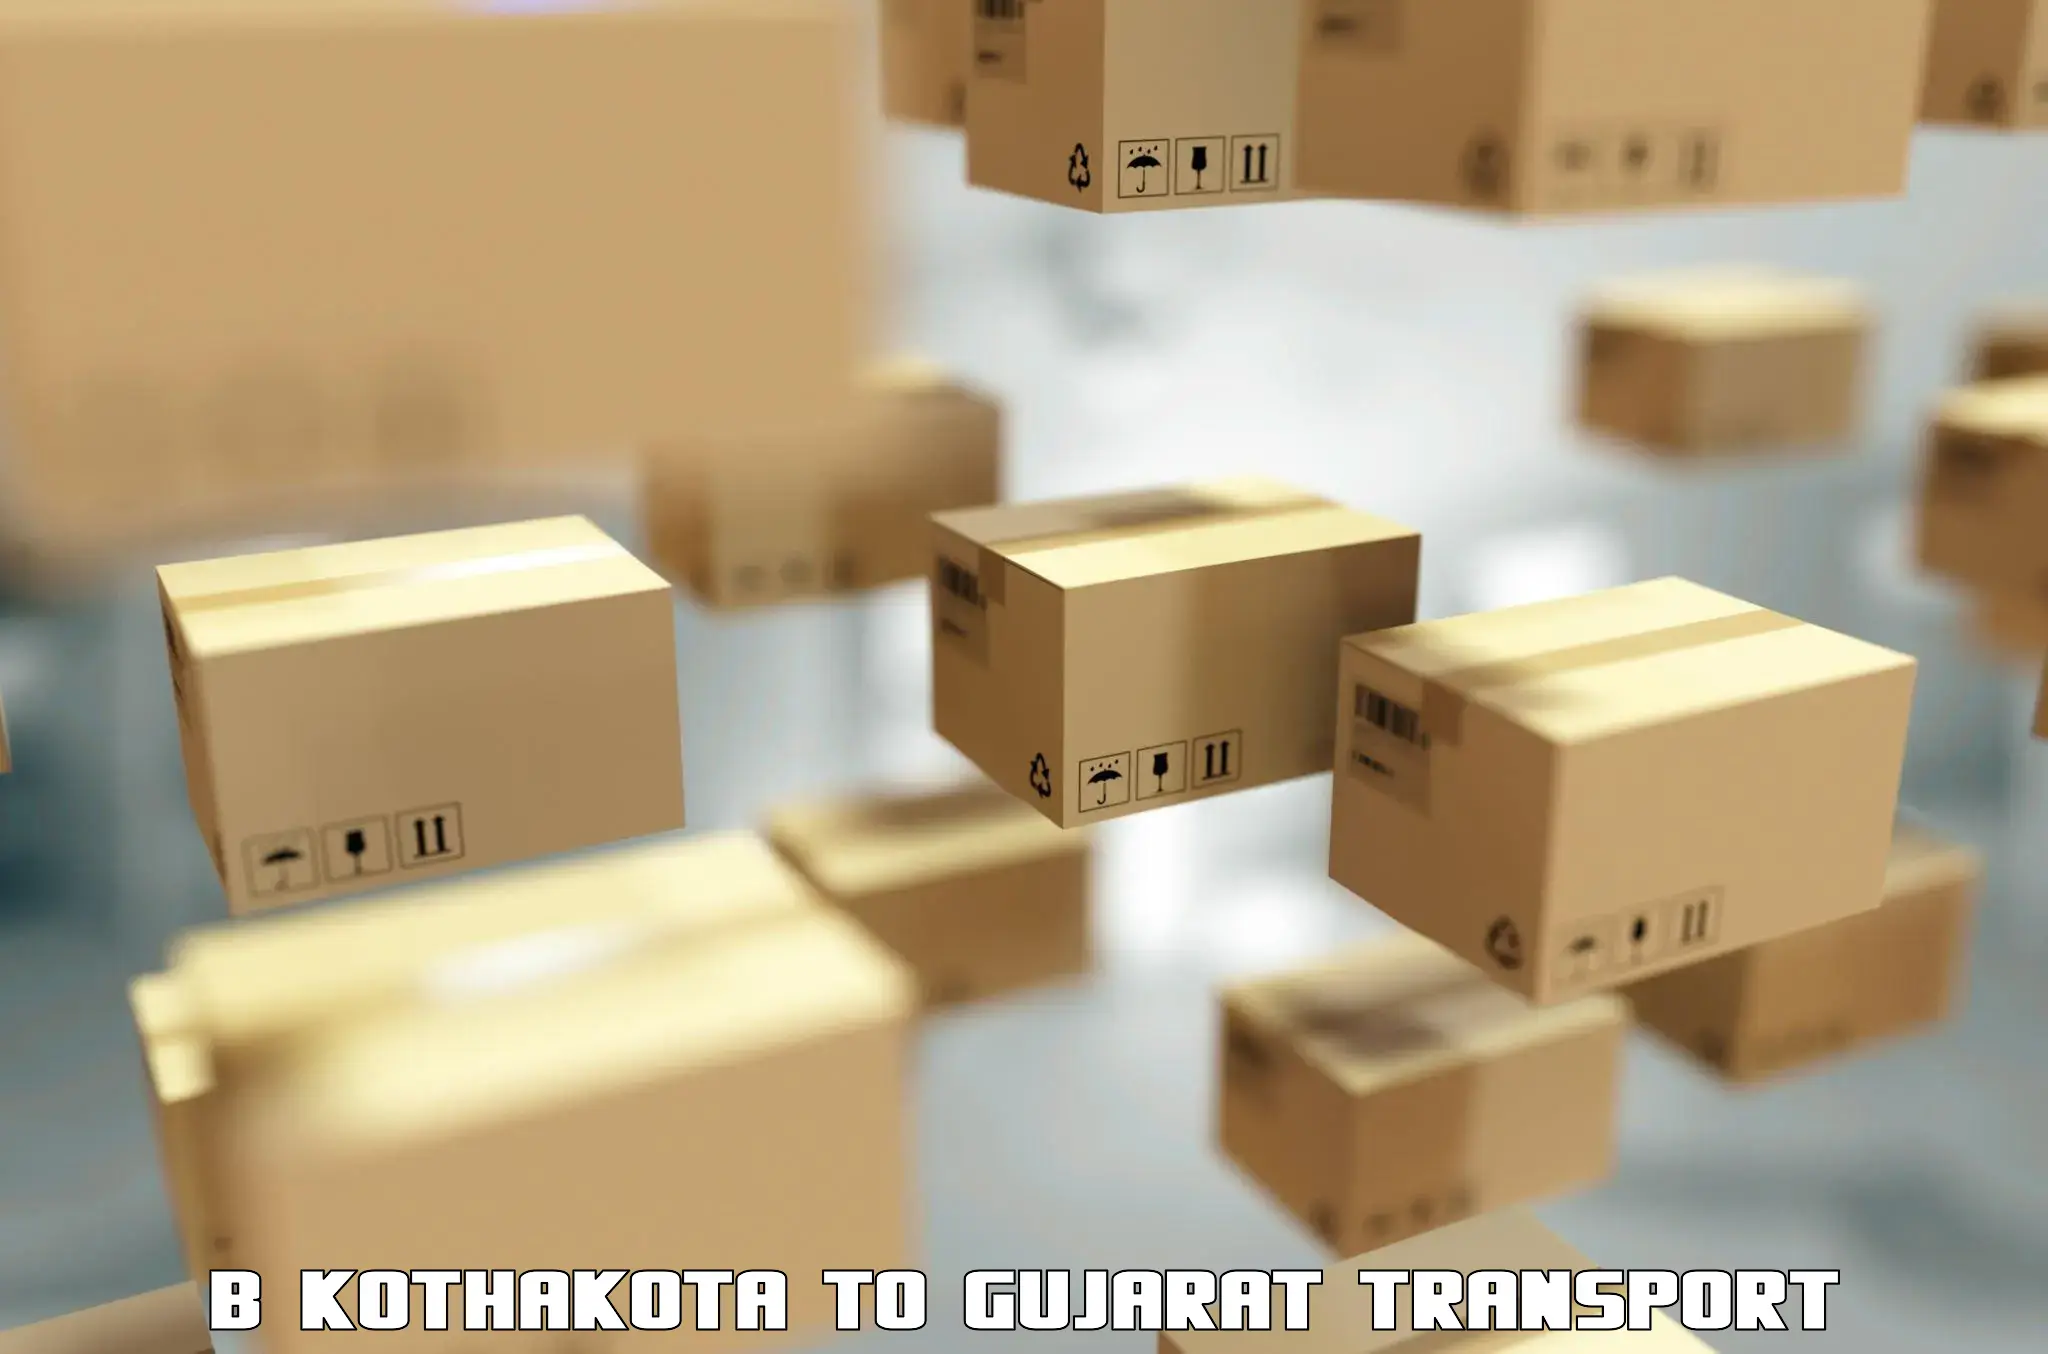 Online transport service B Kothakota to Gandhinagar